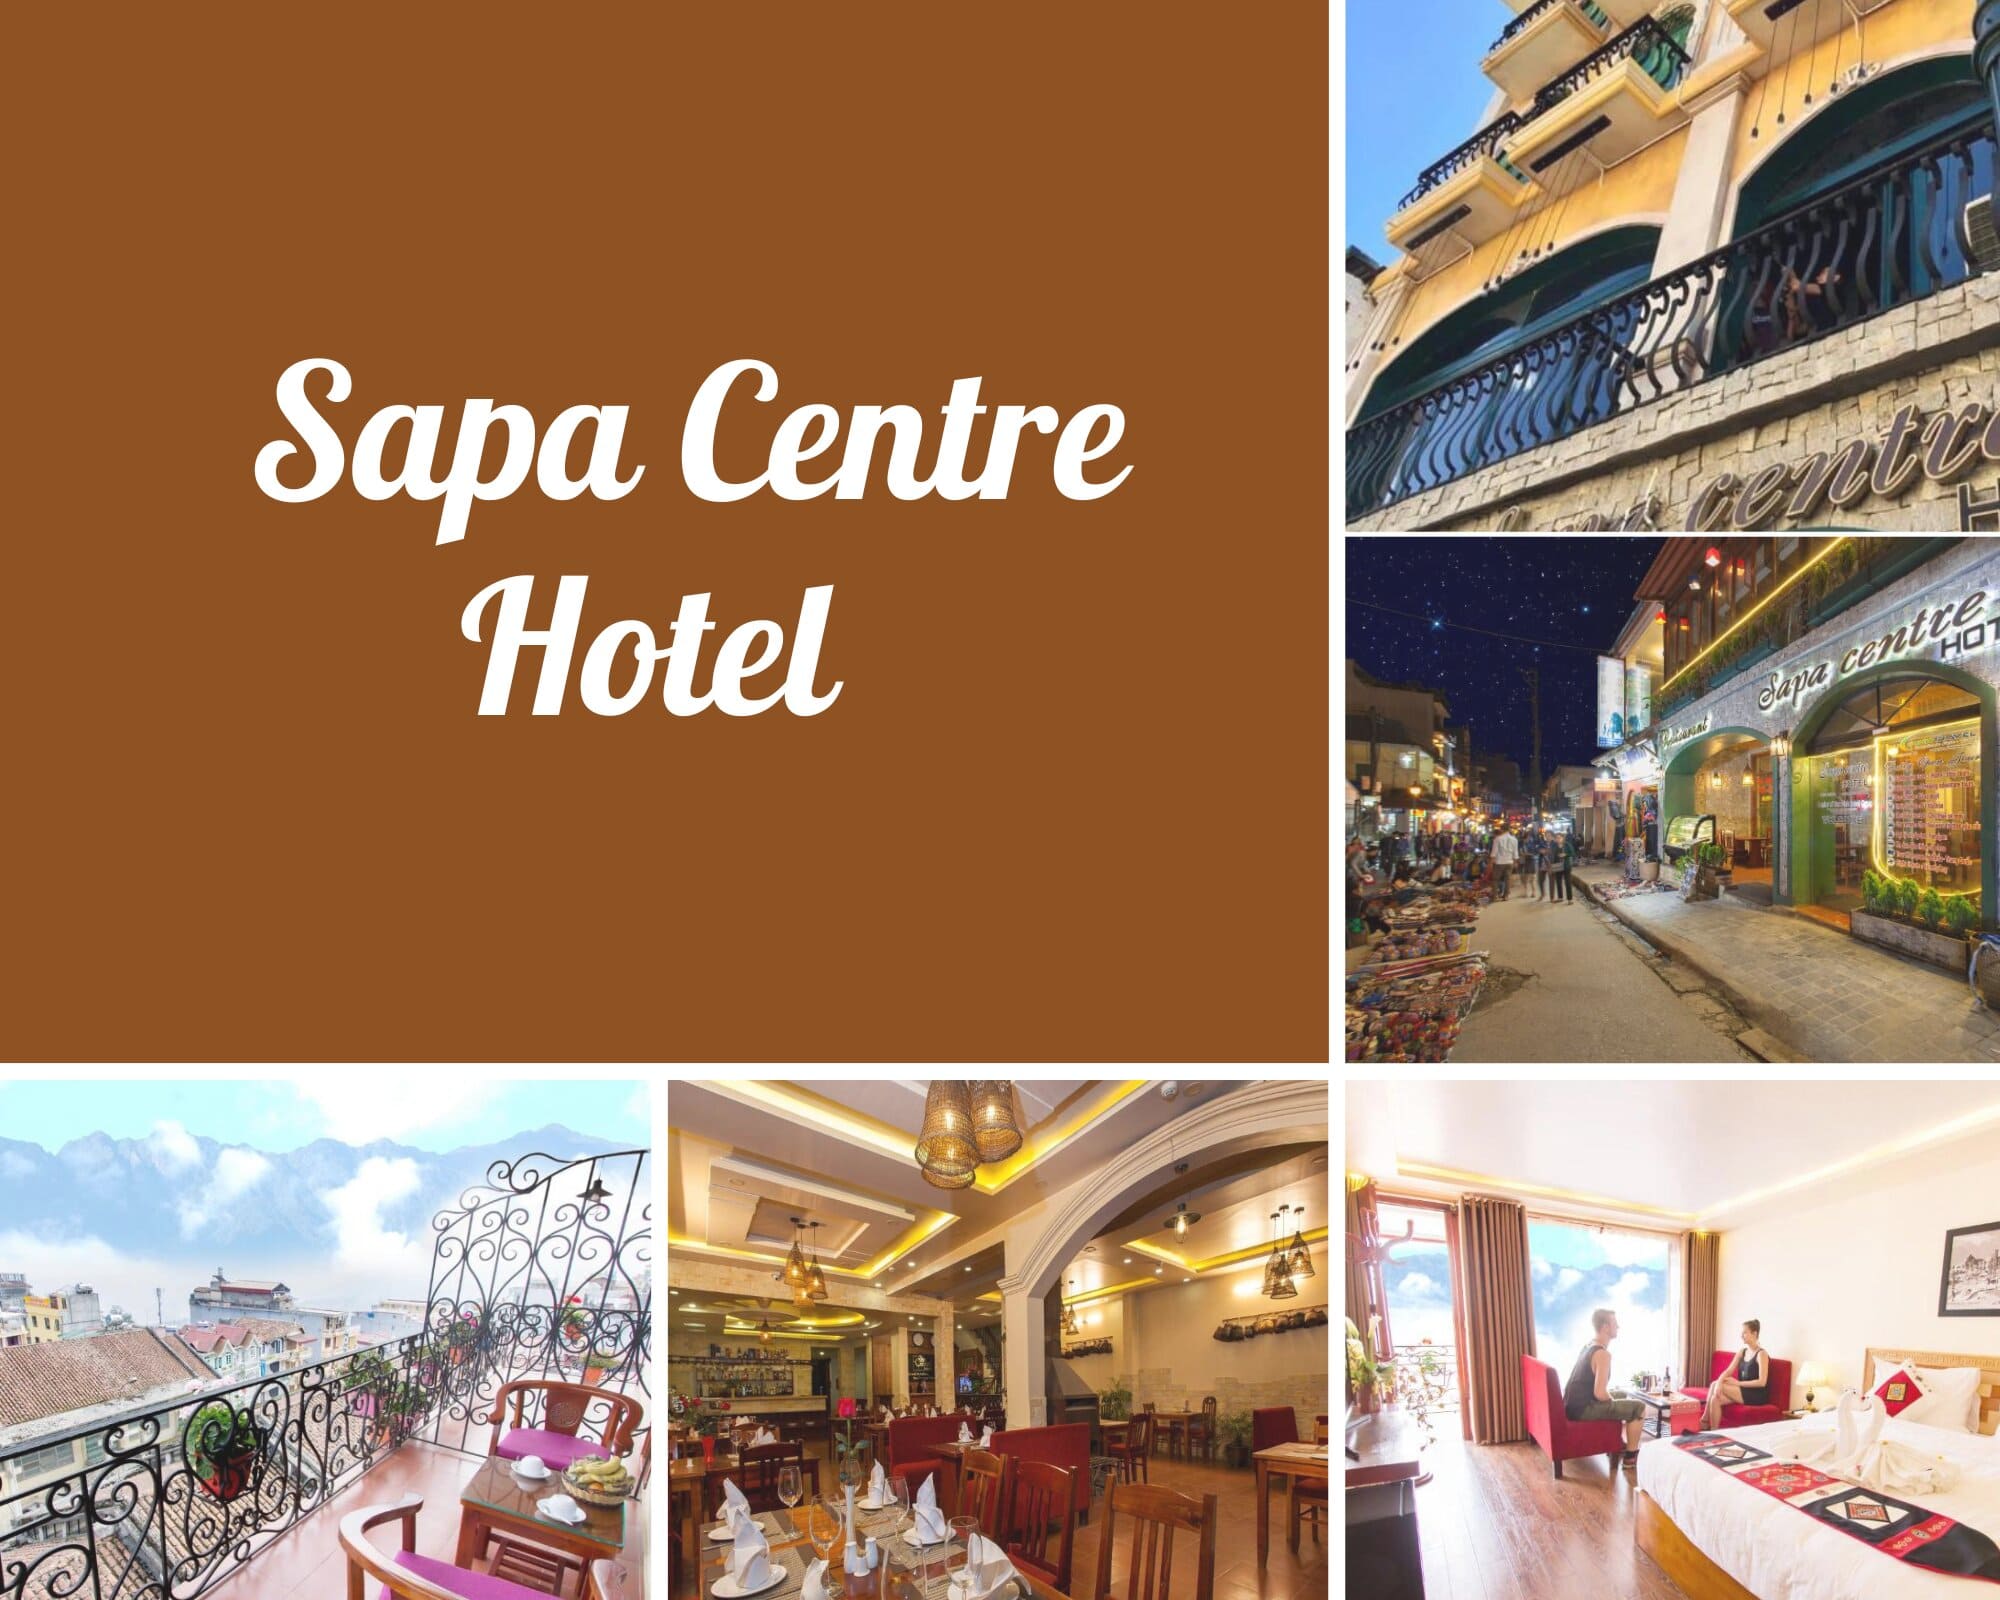 Review Sapa Centre Hotel - Thiết kế hiện đại nơi miền sơn cước